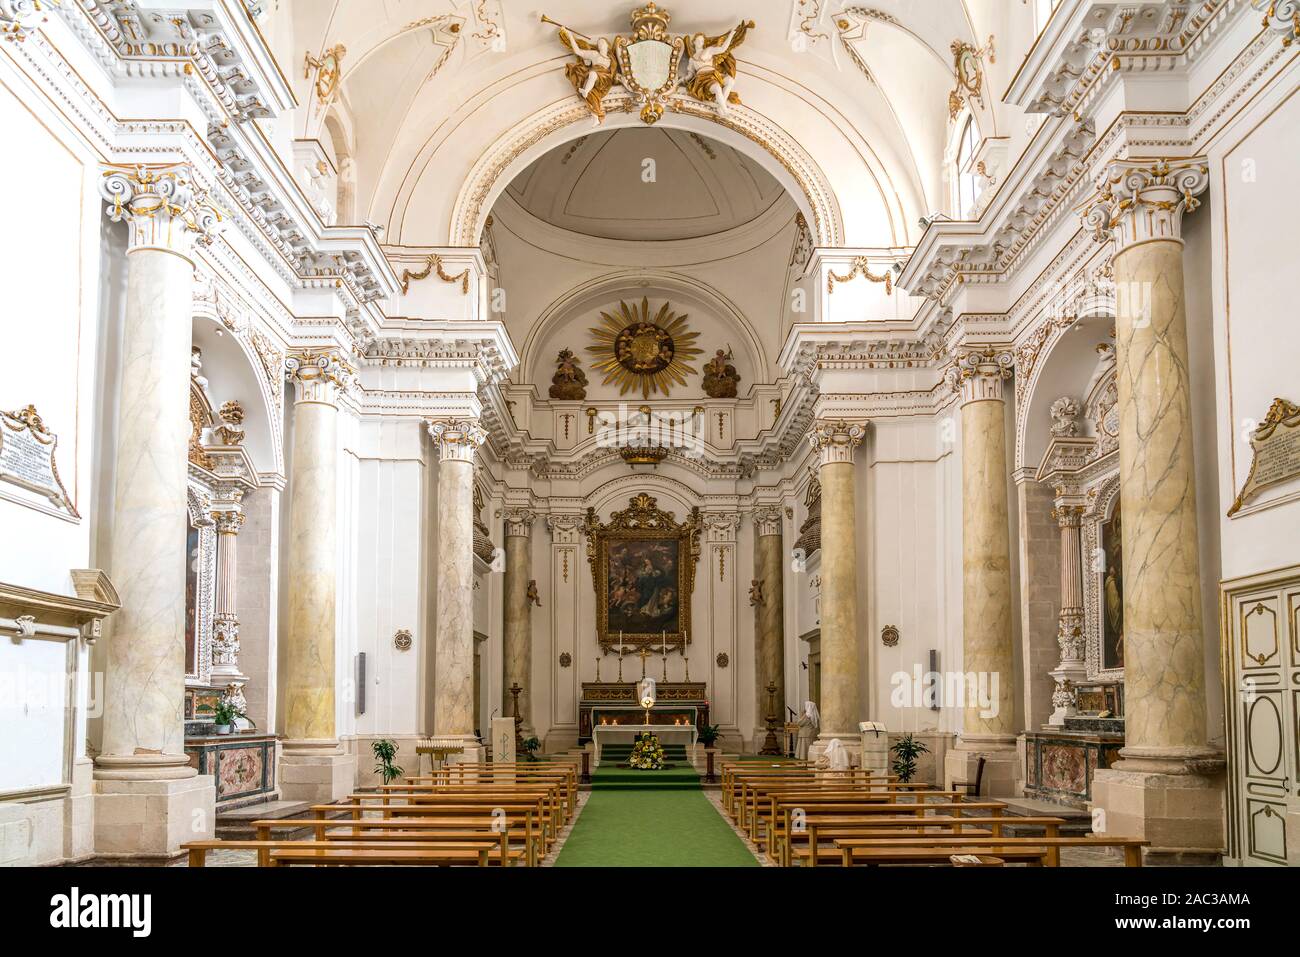 Innenraum der Kirche Santa Maria della Concezione, Insel Ortigia, Syrakus, Sizilien, Italien, Europa  |  church Santa Maria della Concezione interior, Stock Photo